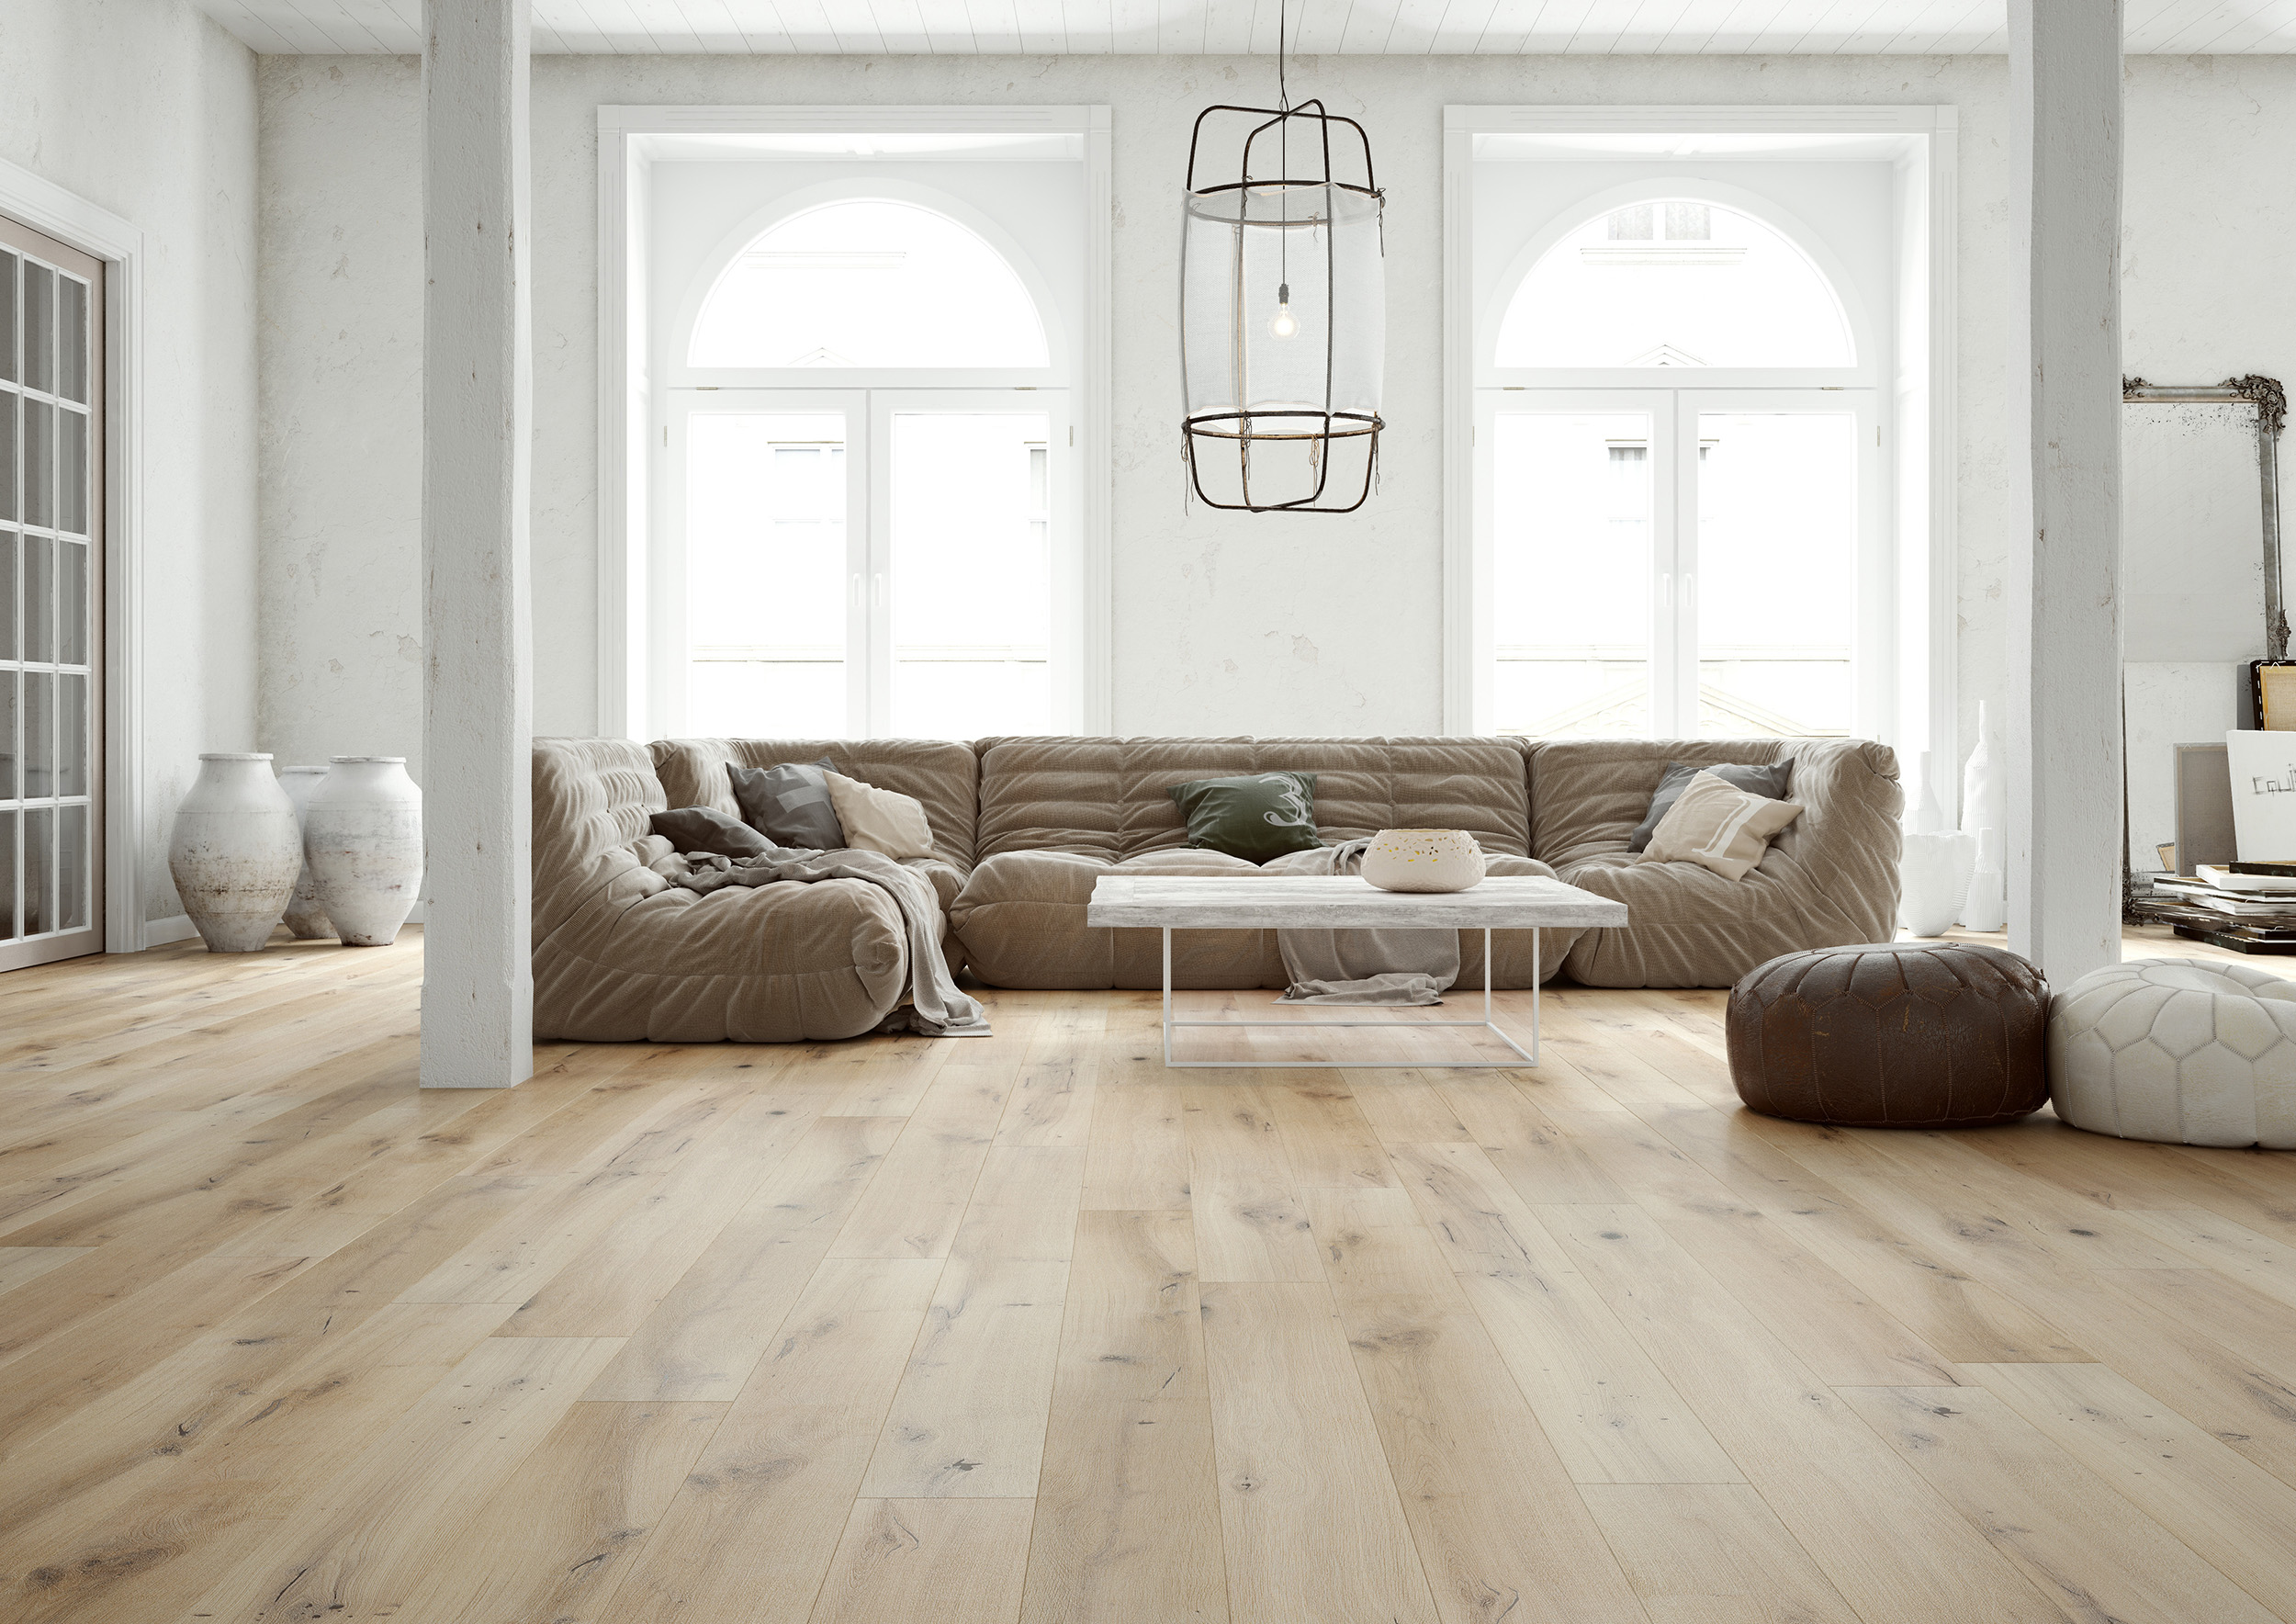 light wood floors in living room